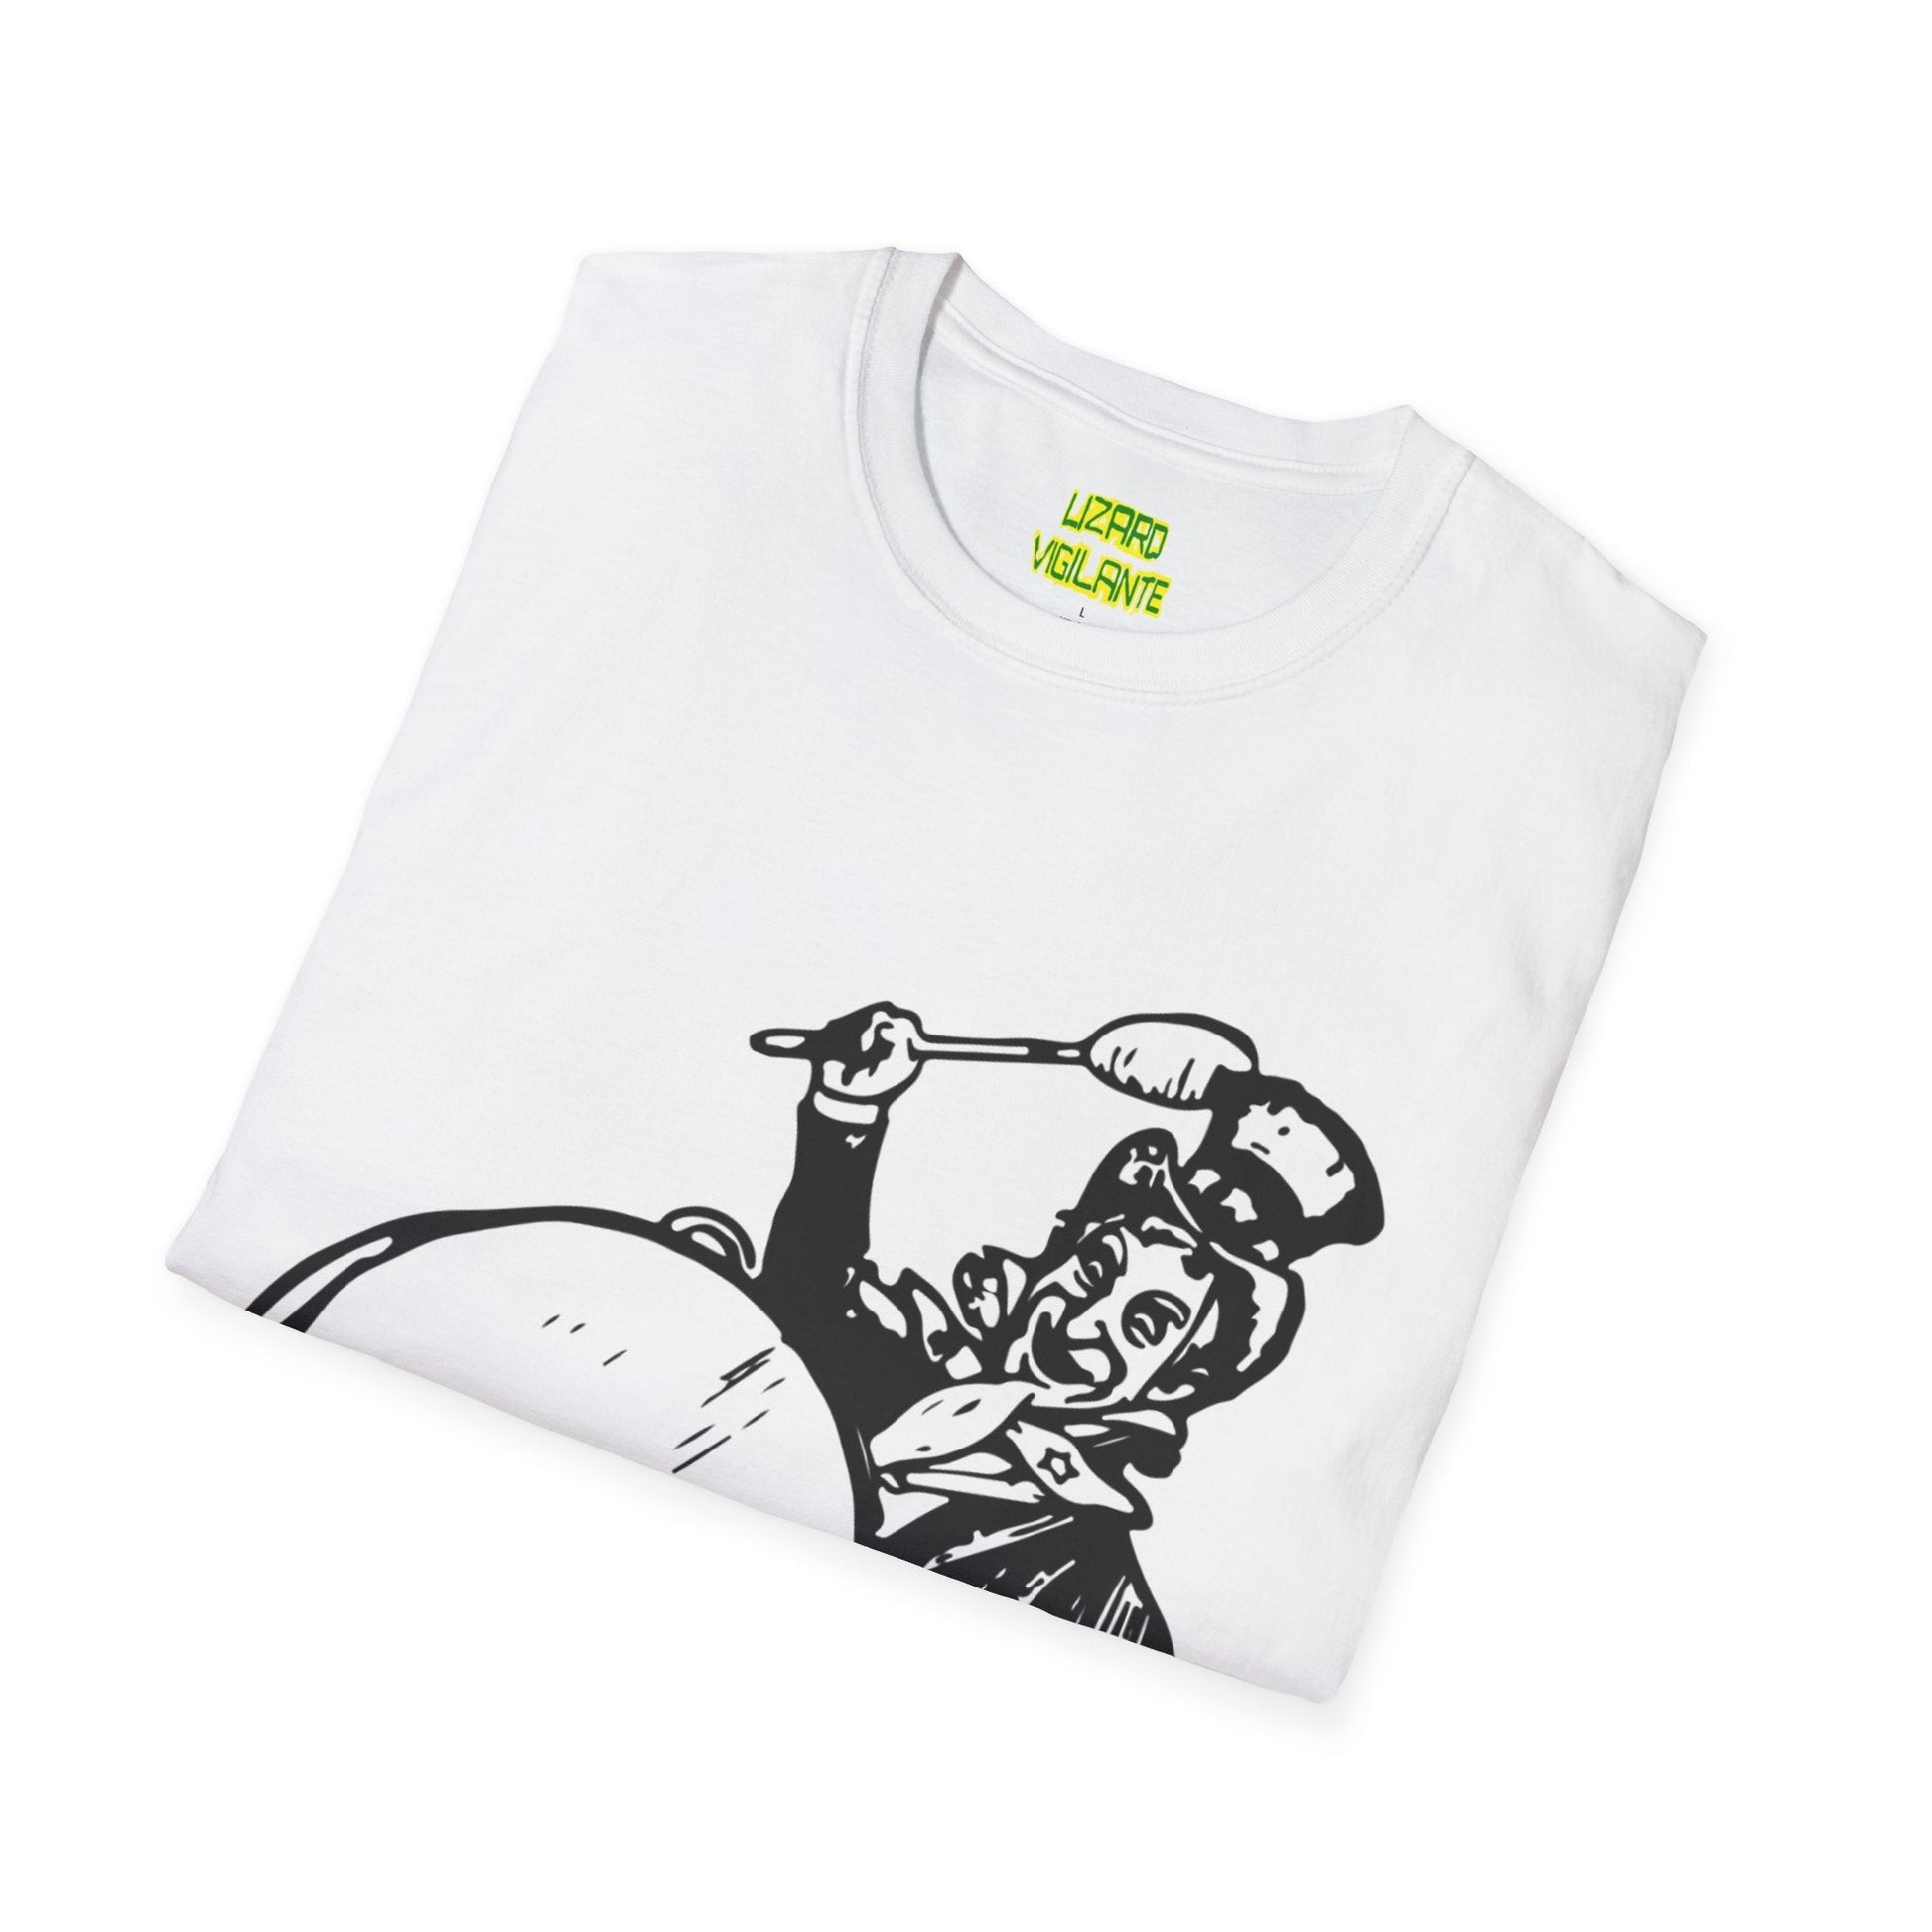 Uncle Sam Drums Unisex Softstyle T-Shirt, White - Lizard Vigilante